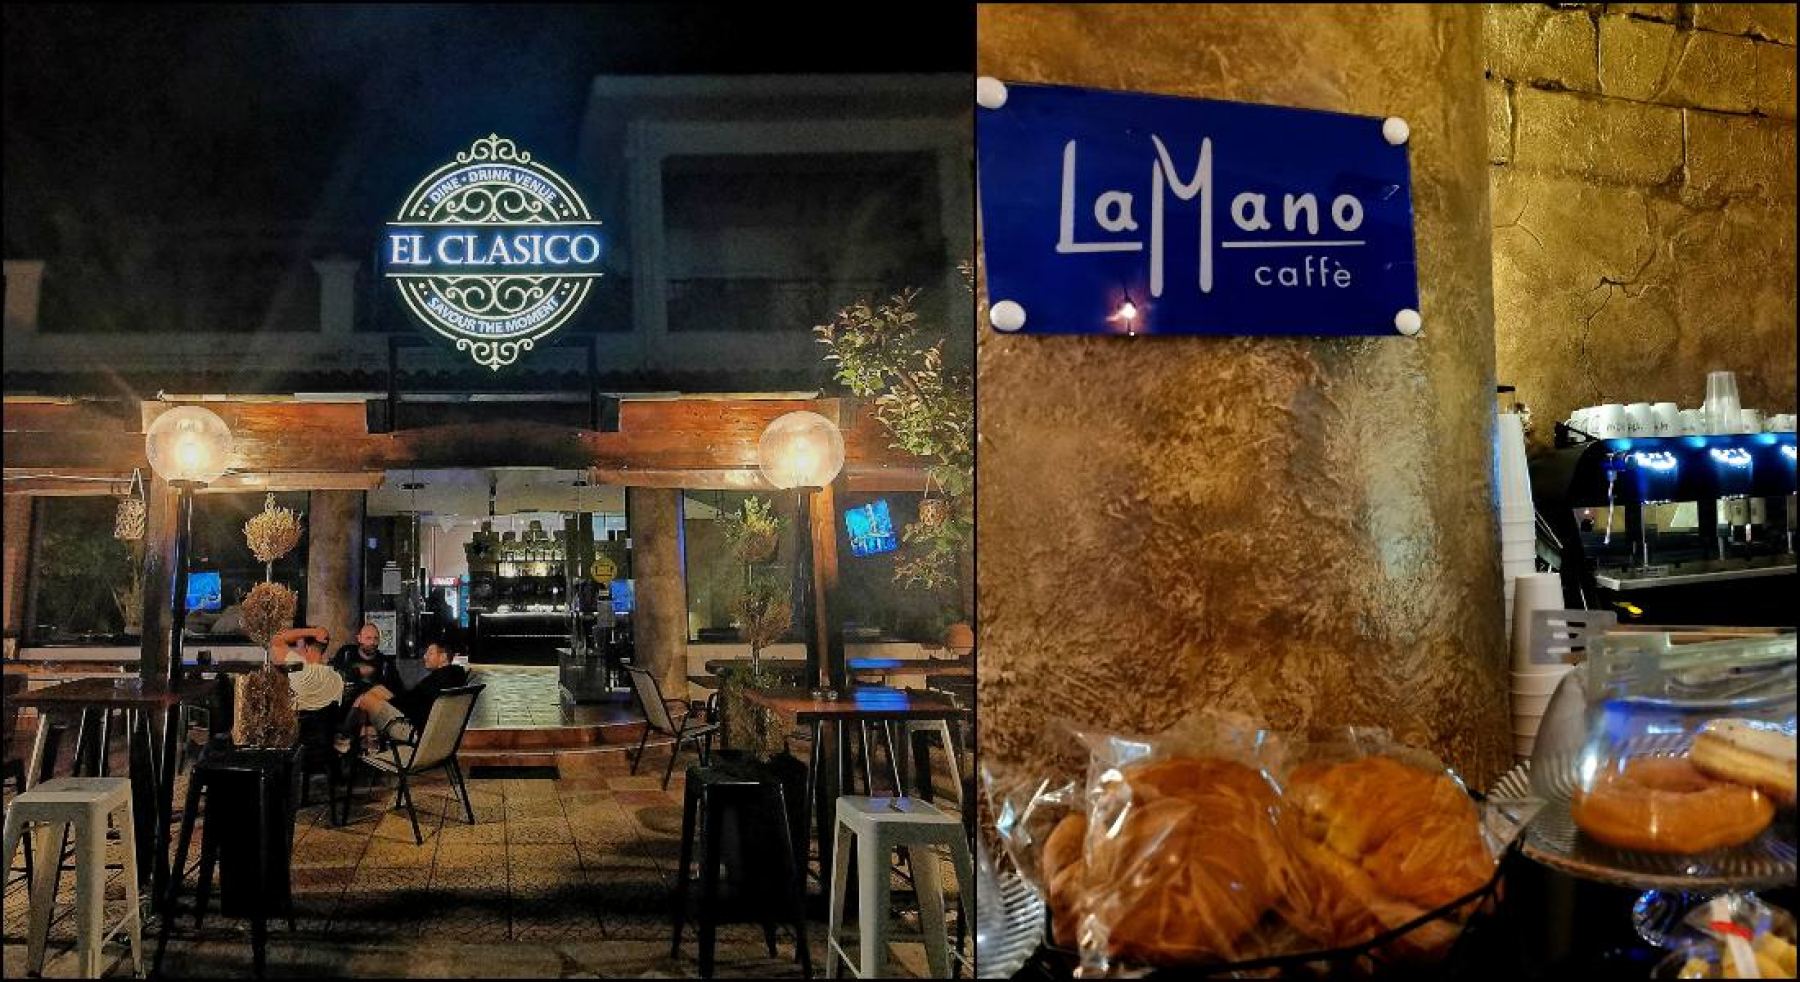 Τώρα μπορείς να απολαύσεις τον ξεχωριστό καφέ La Mano και στο El Clasico!